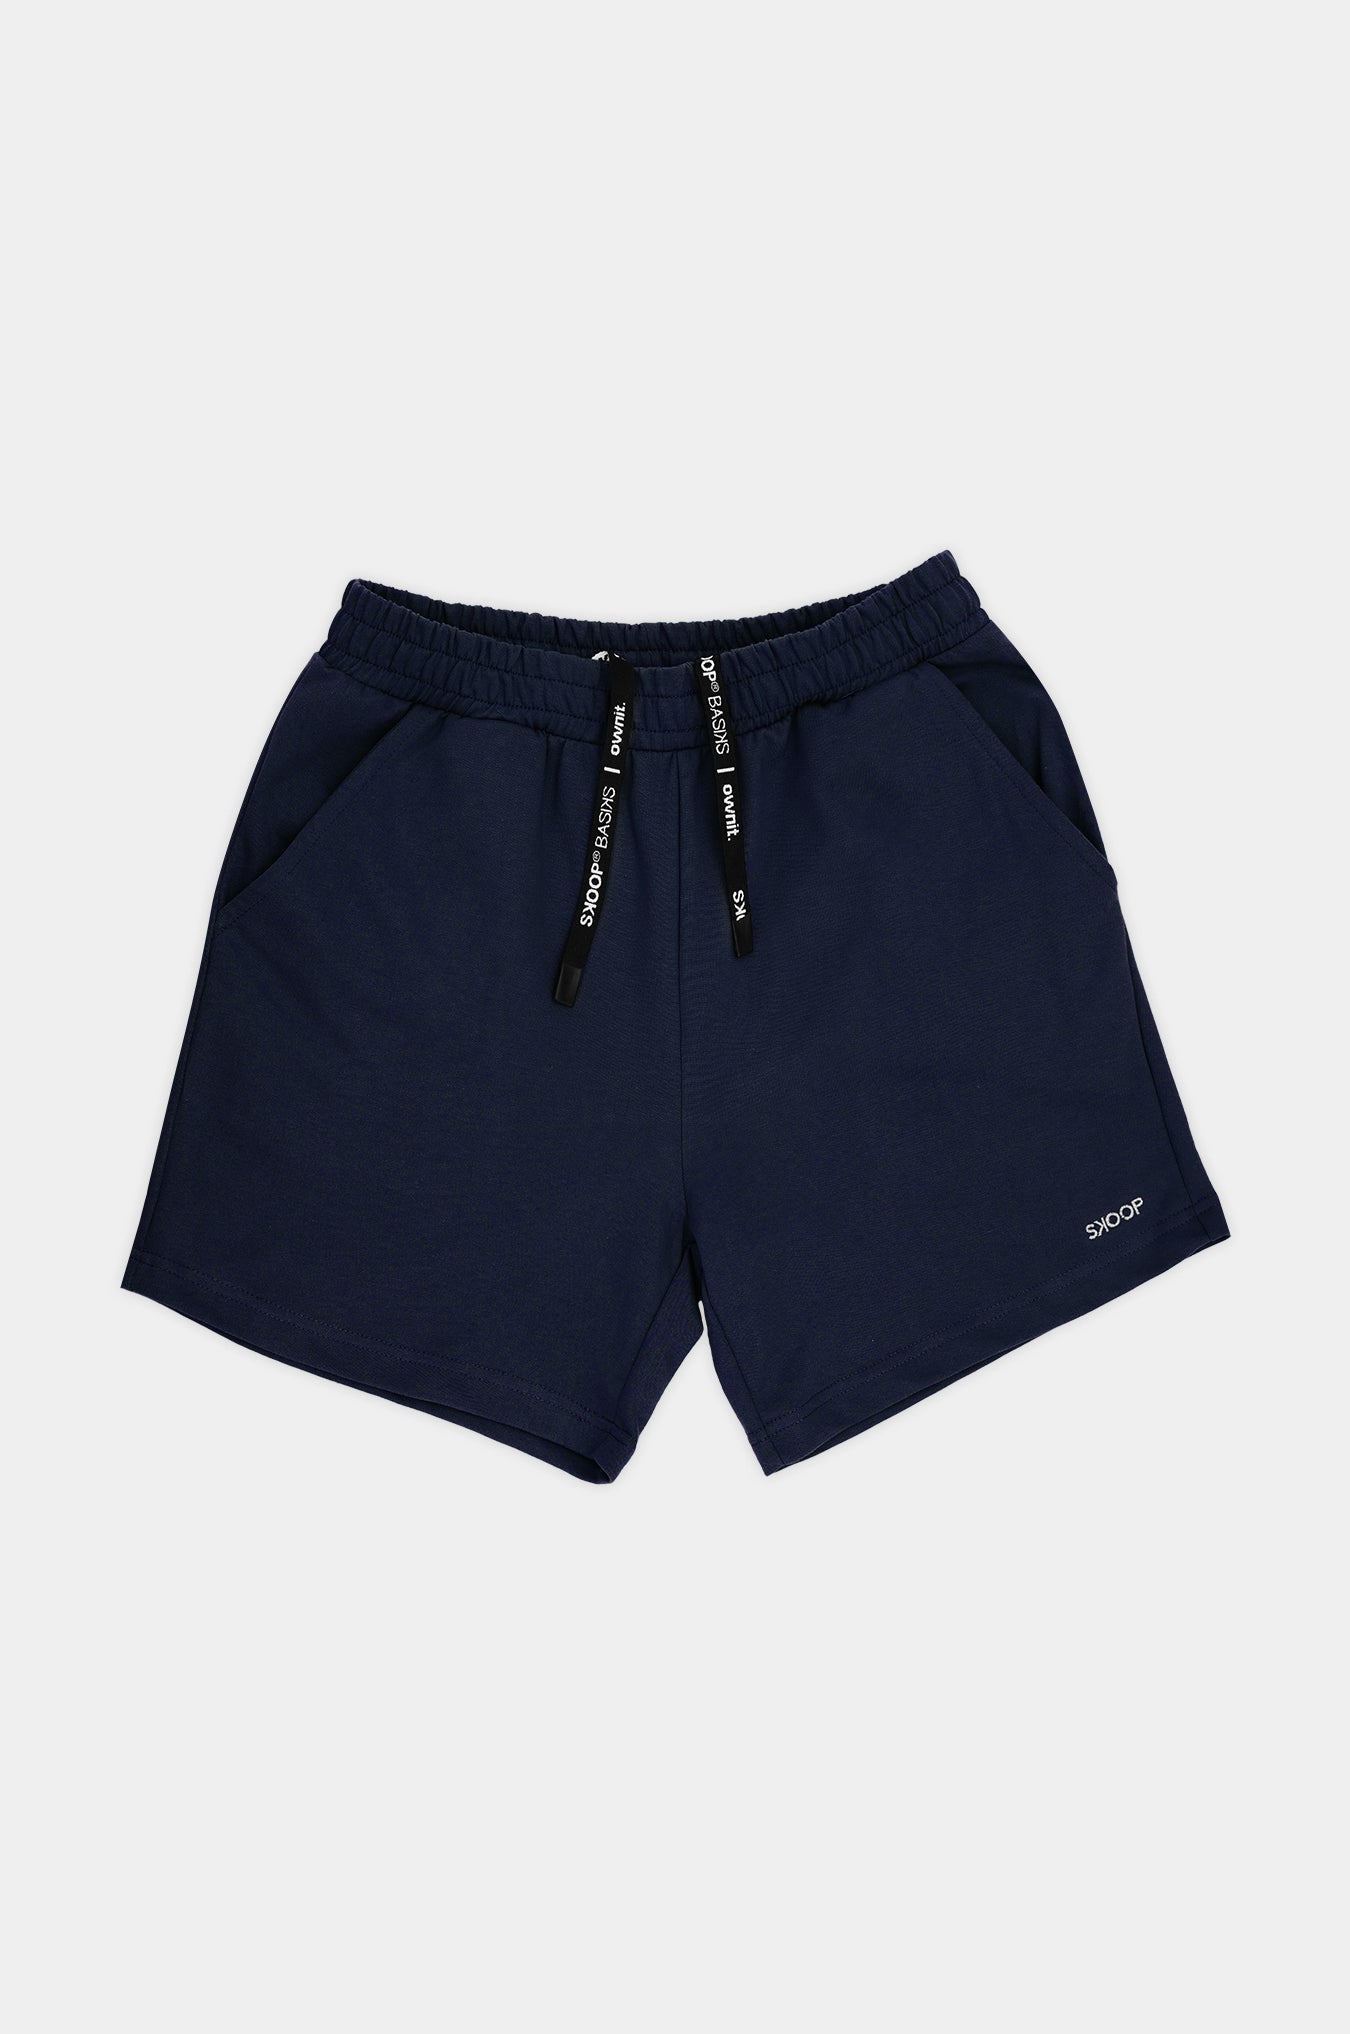 SKOOP® Basiks Shorts Delft Blue